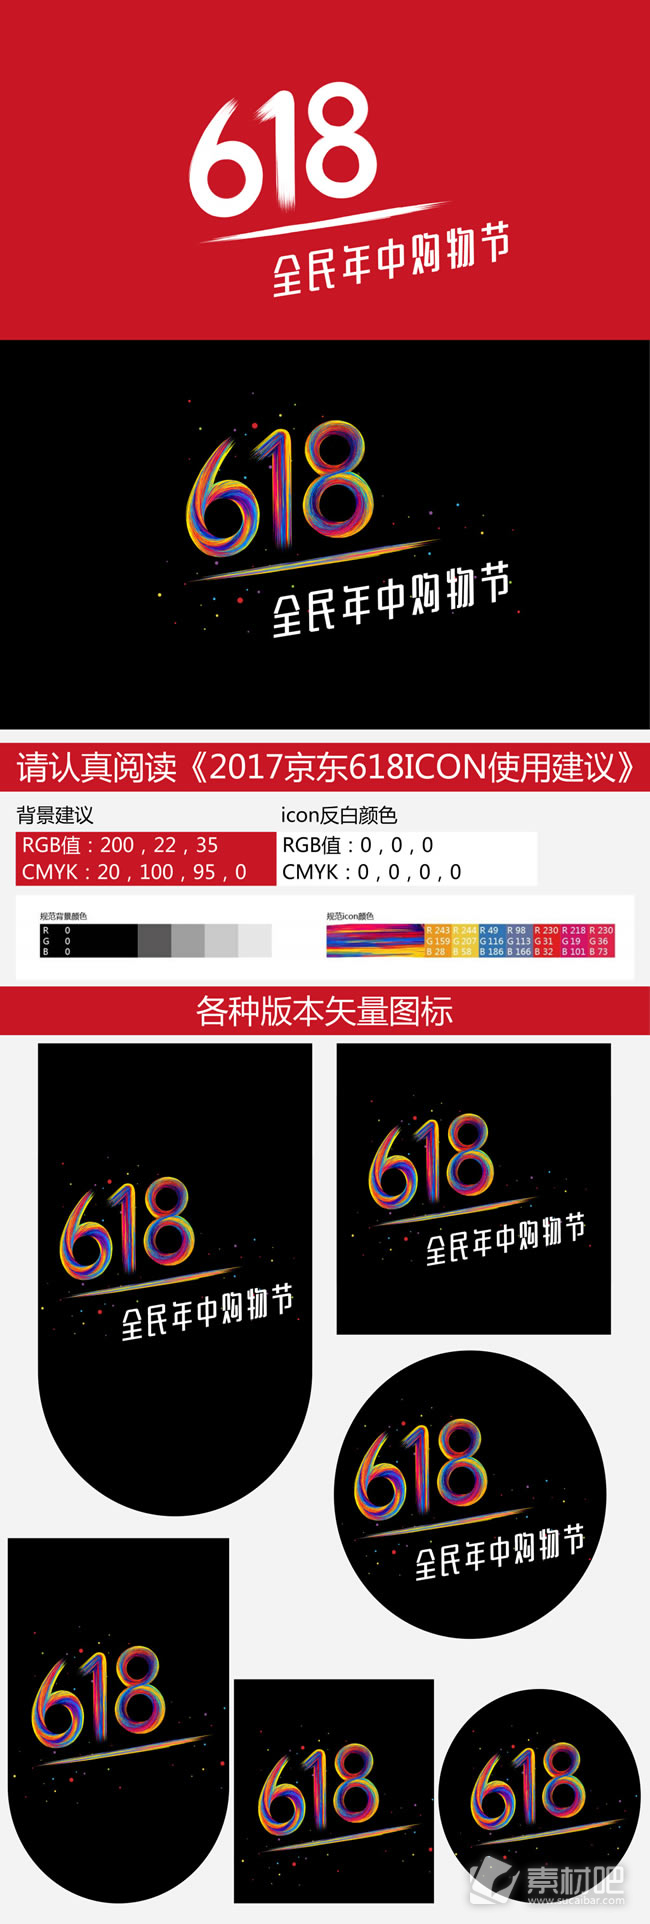 2017京东618全民年中购物节logo素材大